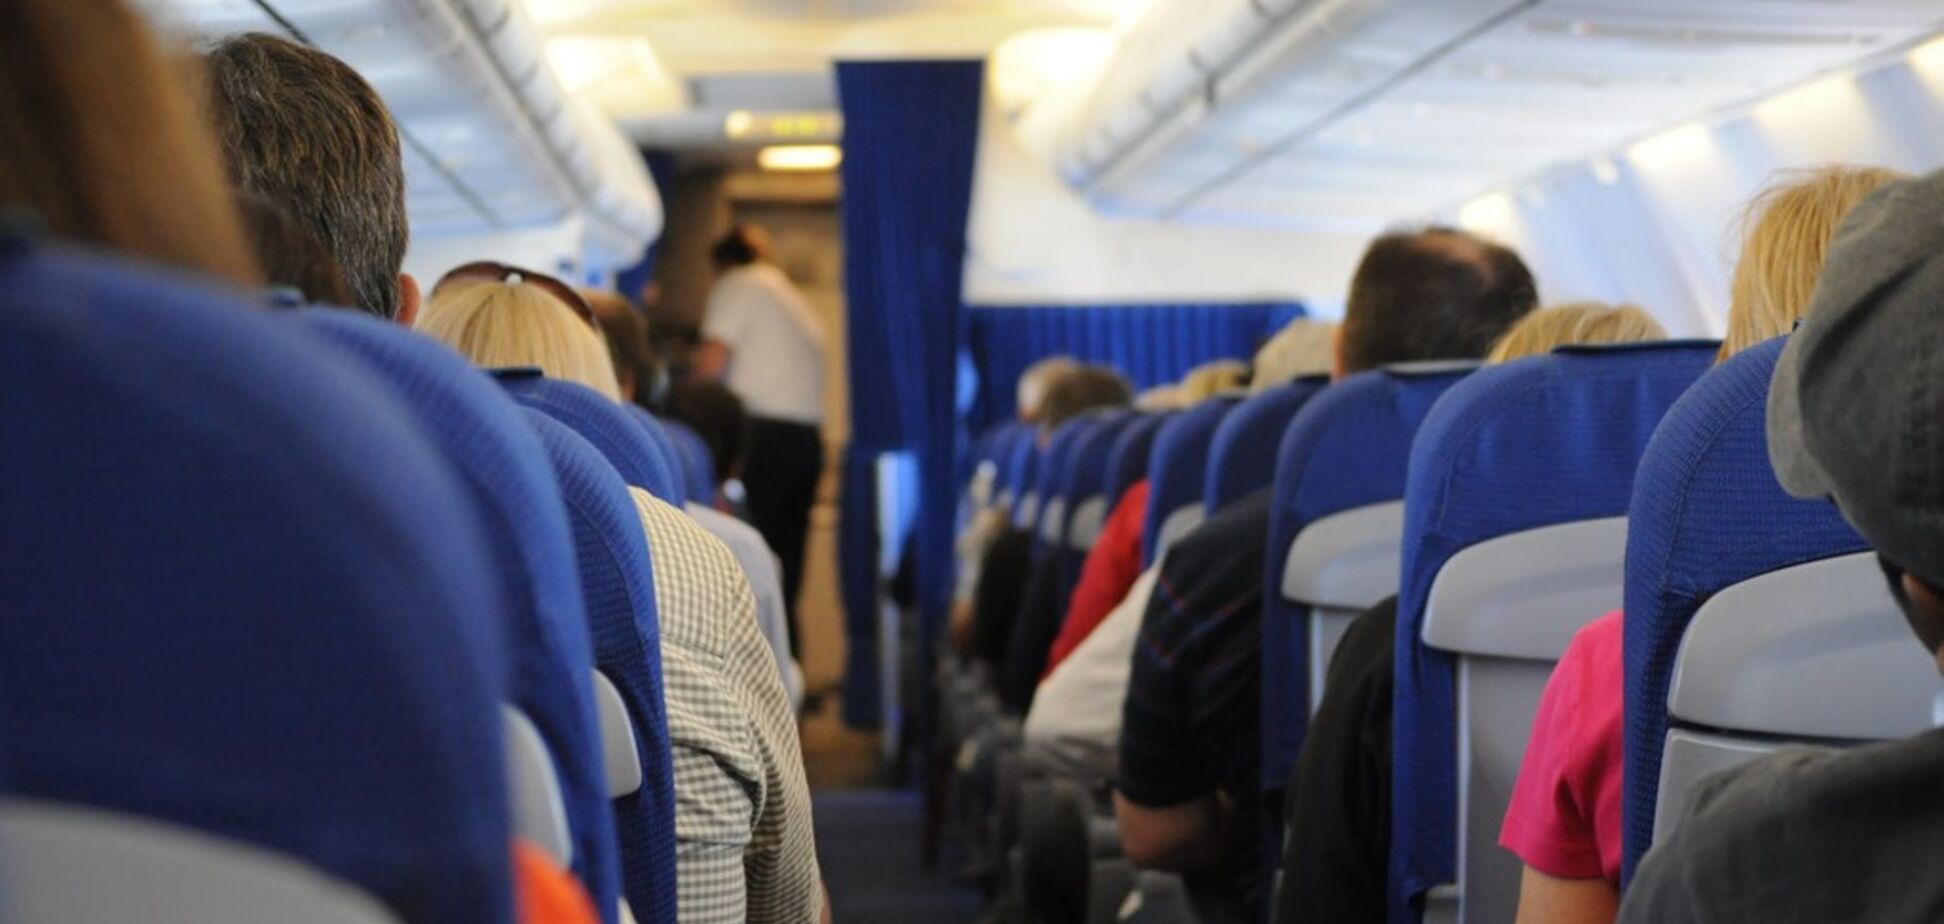 Розкриті секретні правила поведінки в літаку